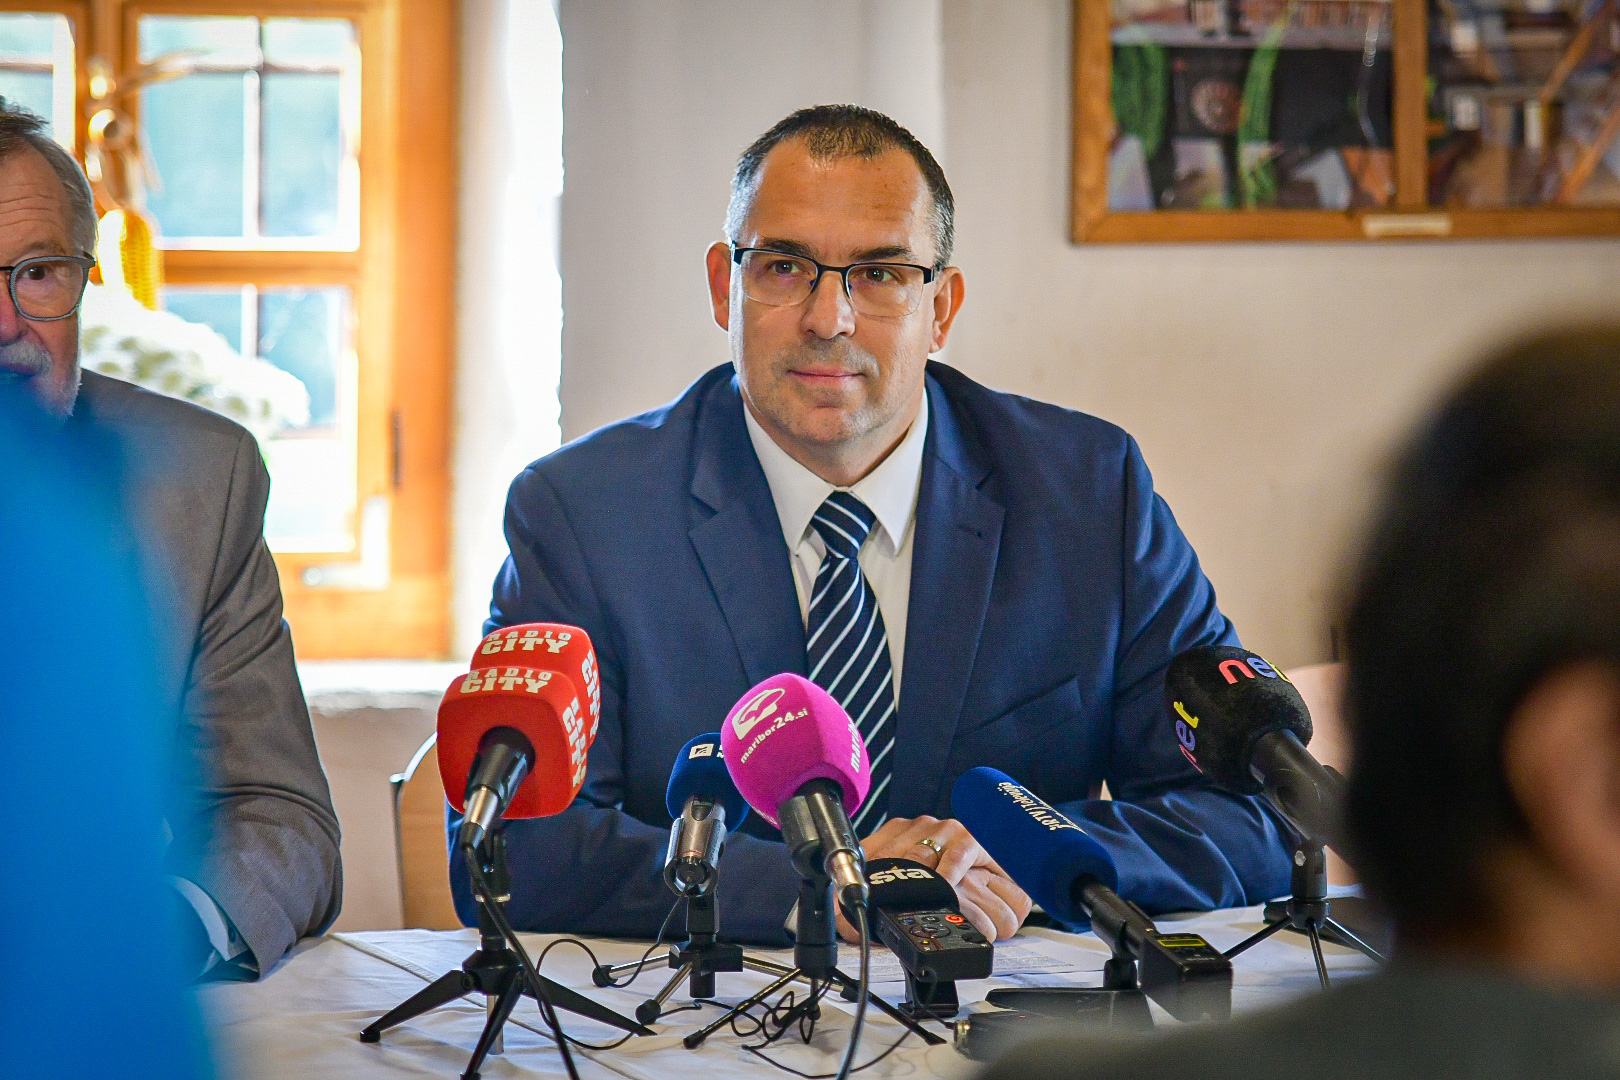 Mariborski poslanec otrokom v stiski doniral tisoč evrov